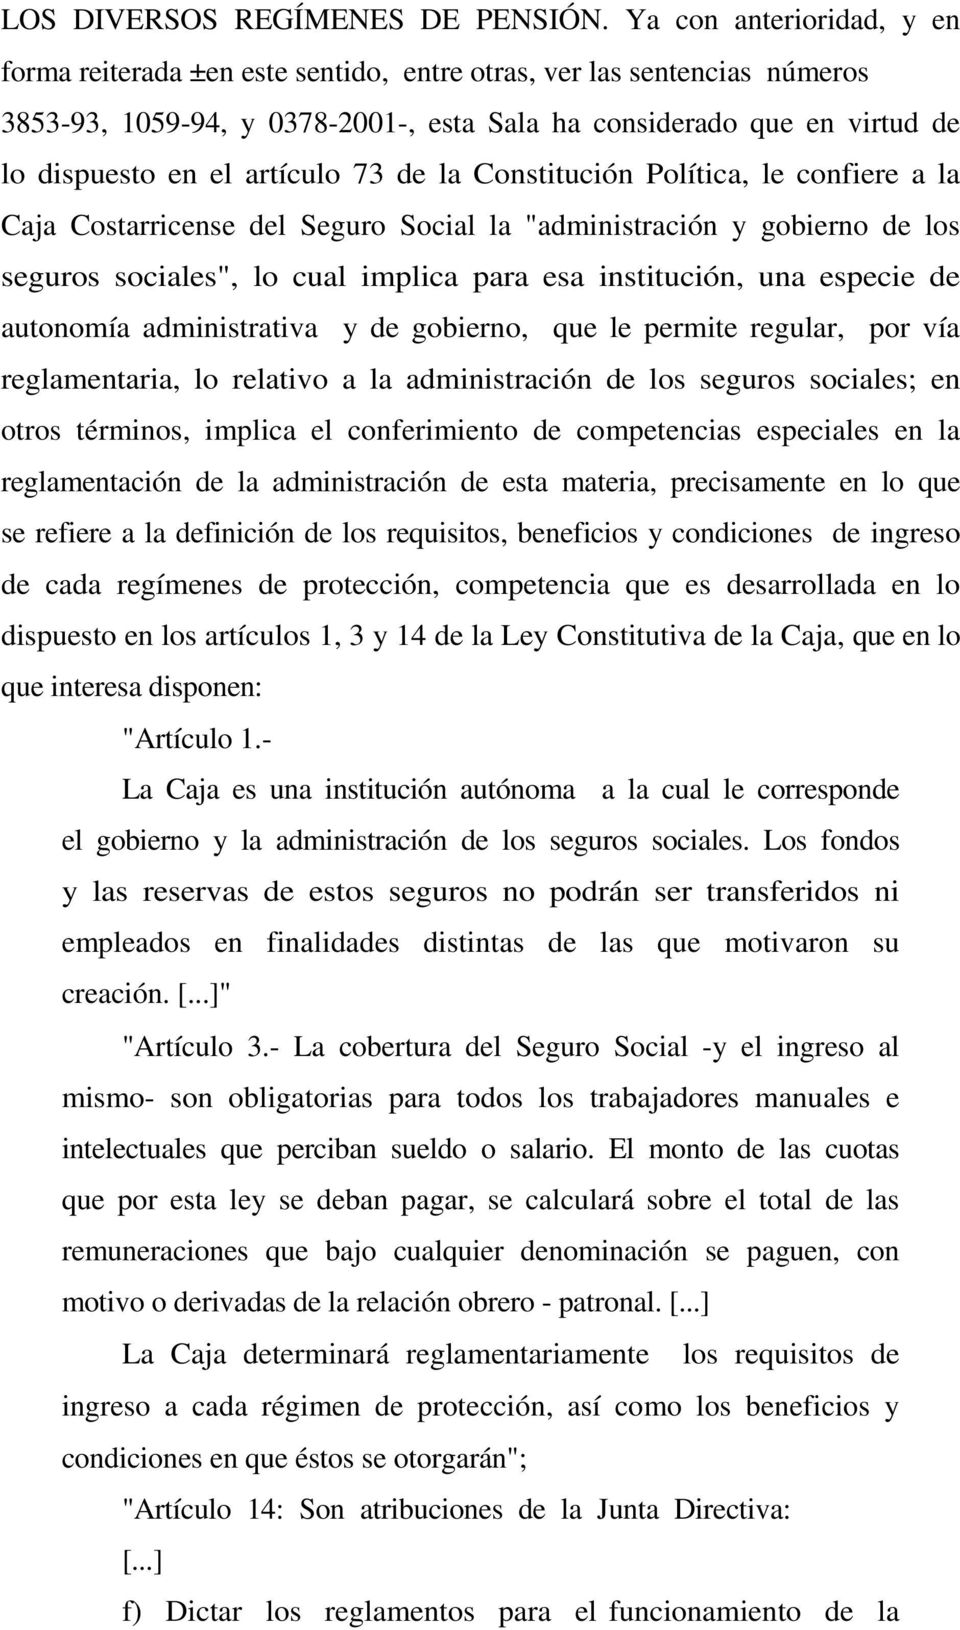 artículo 73 de la Constitución Política, le confiere a la Caja Costarricense del Seguro Social la "administración y gobierno de los seguros sociales", lo cual implica para esa institución, una